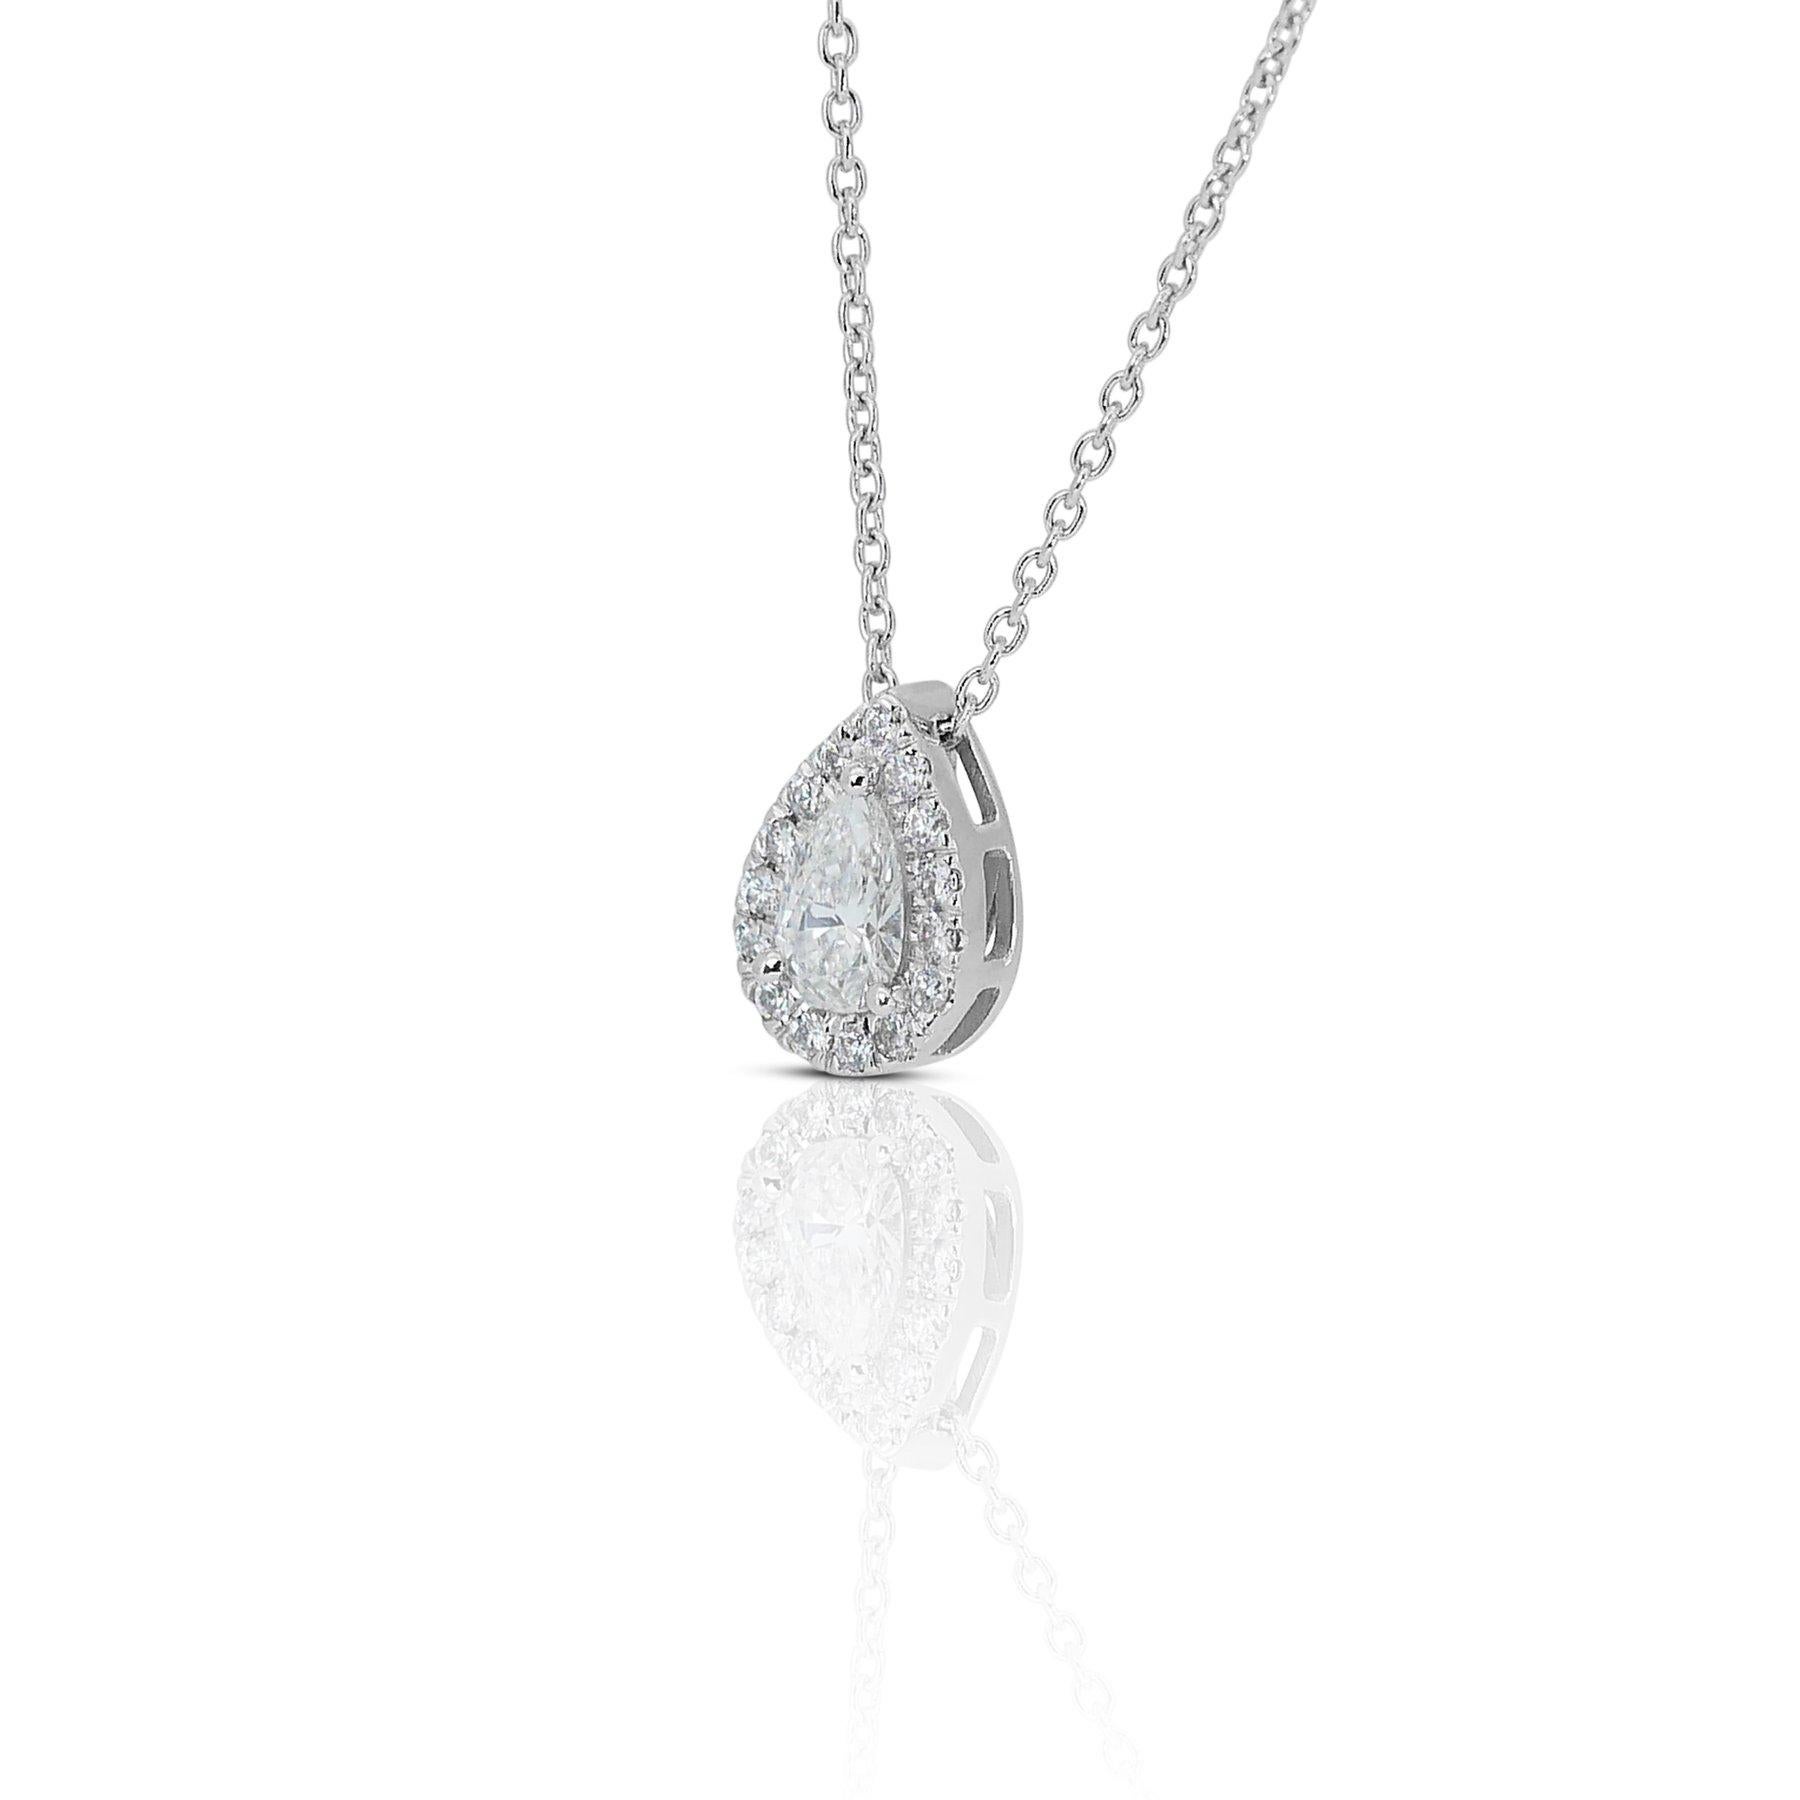 Magnifique collier halo en or blanc 18 carats avec diamant poire de 0,71 ct - certifié GIA

Ce luxueux pendentif est réalisé de manière experte en or blanc 18k et arbore un superbe diamant en forme de poire de 0,71 carat en guise de pièce maîtresse.